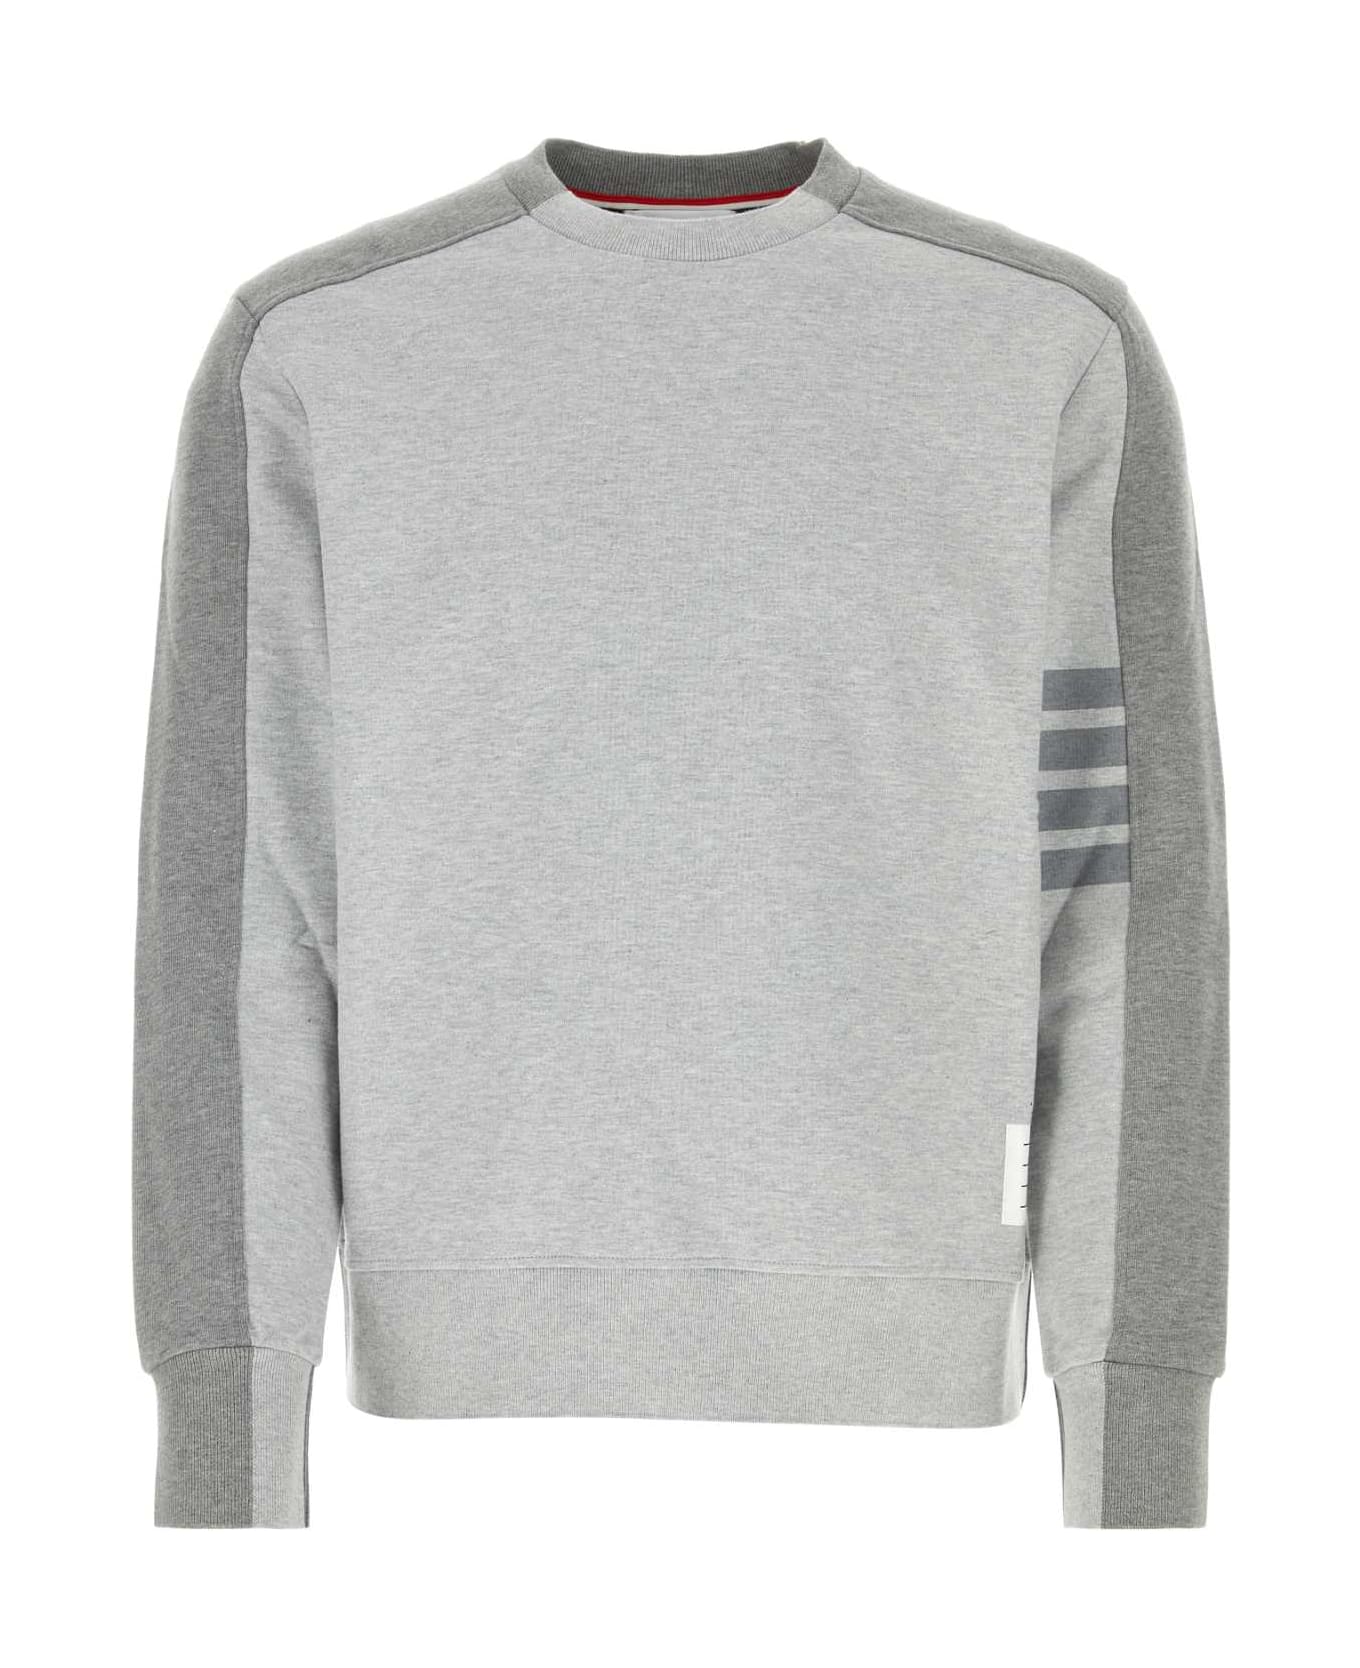 Thom Browne Melange Grey Cotton Sweatshirt - LTGREY フリース